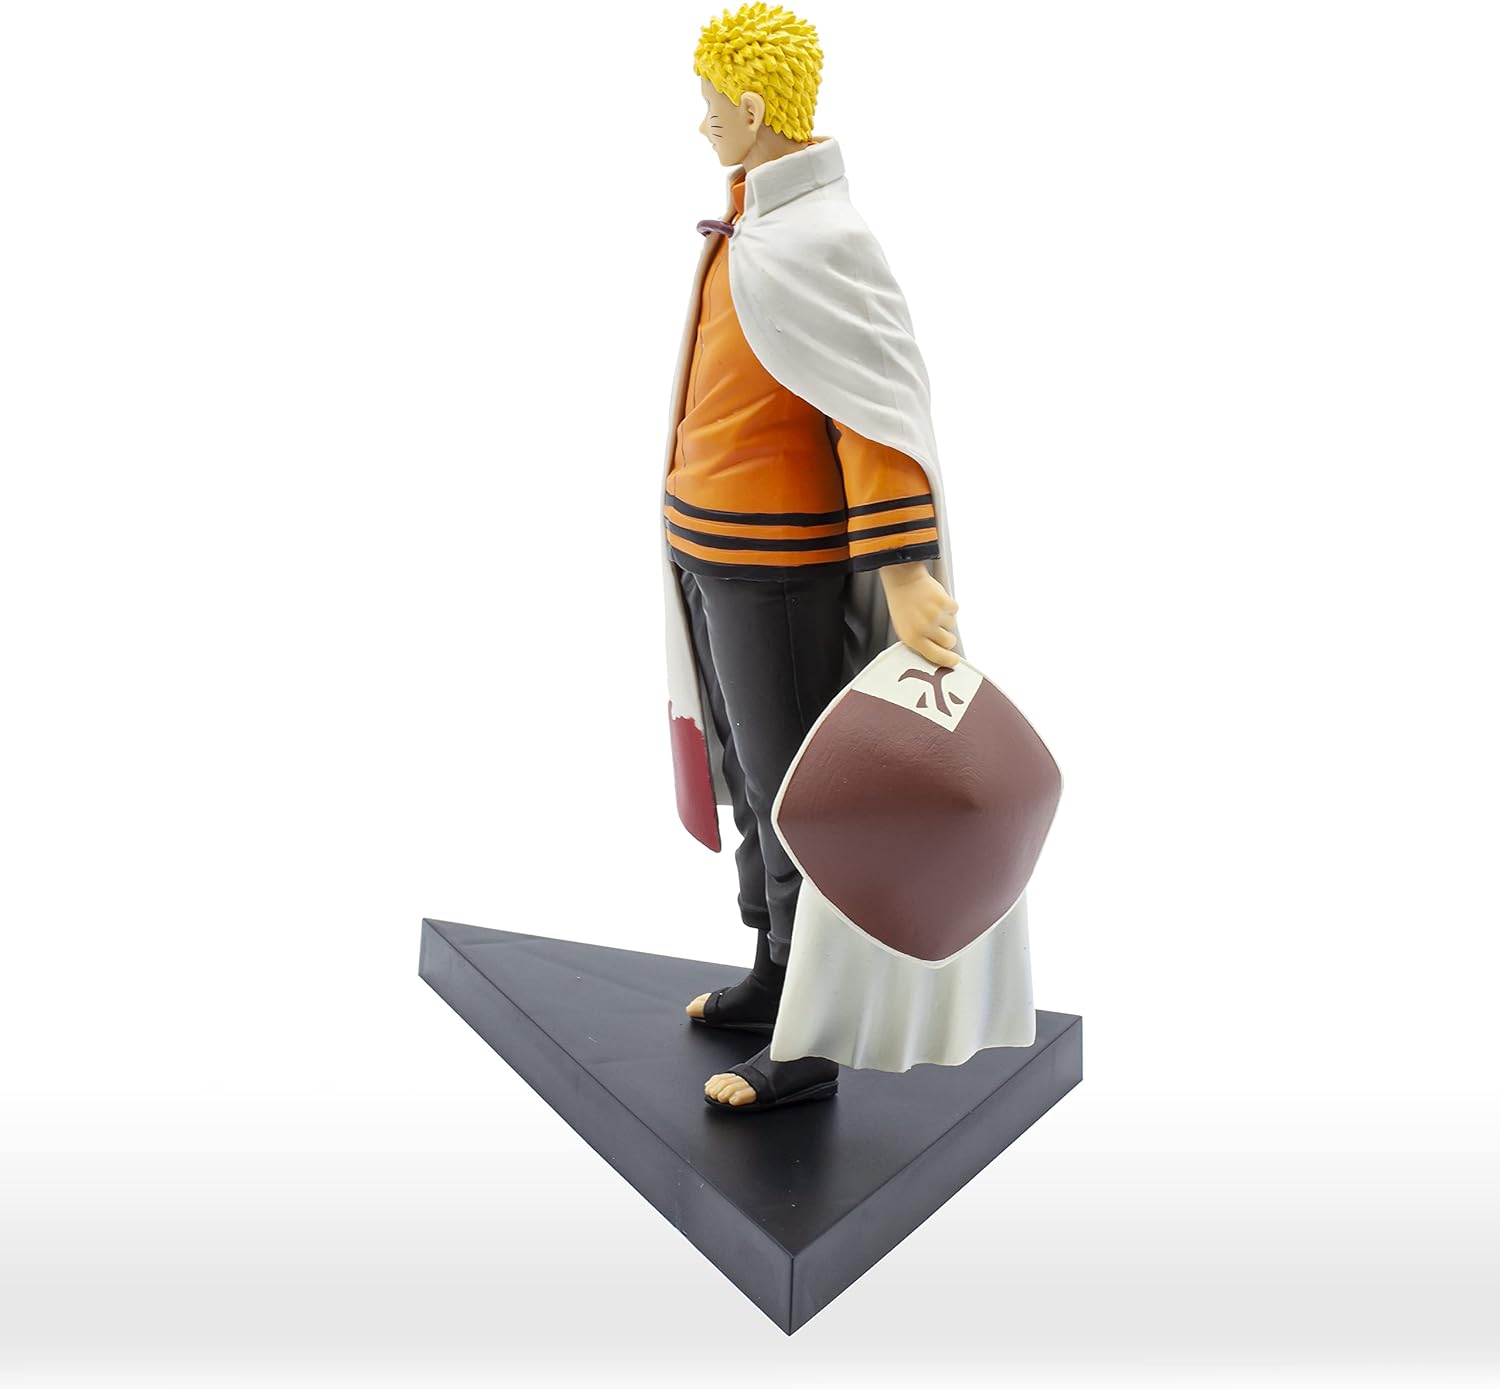 Boruto: Naruto Next Generations - Shinobu Relations Sp2 Comeback Naruto Figure